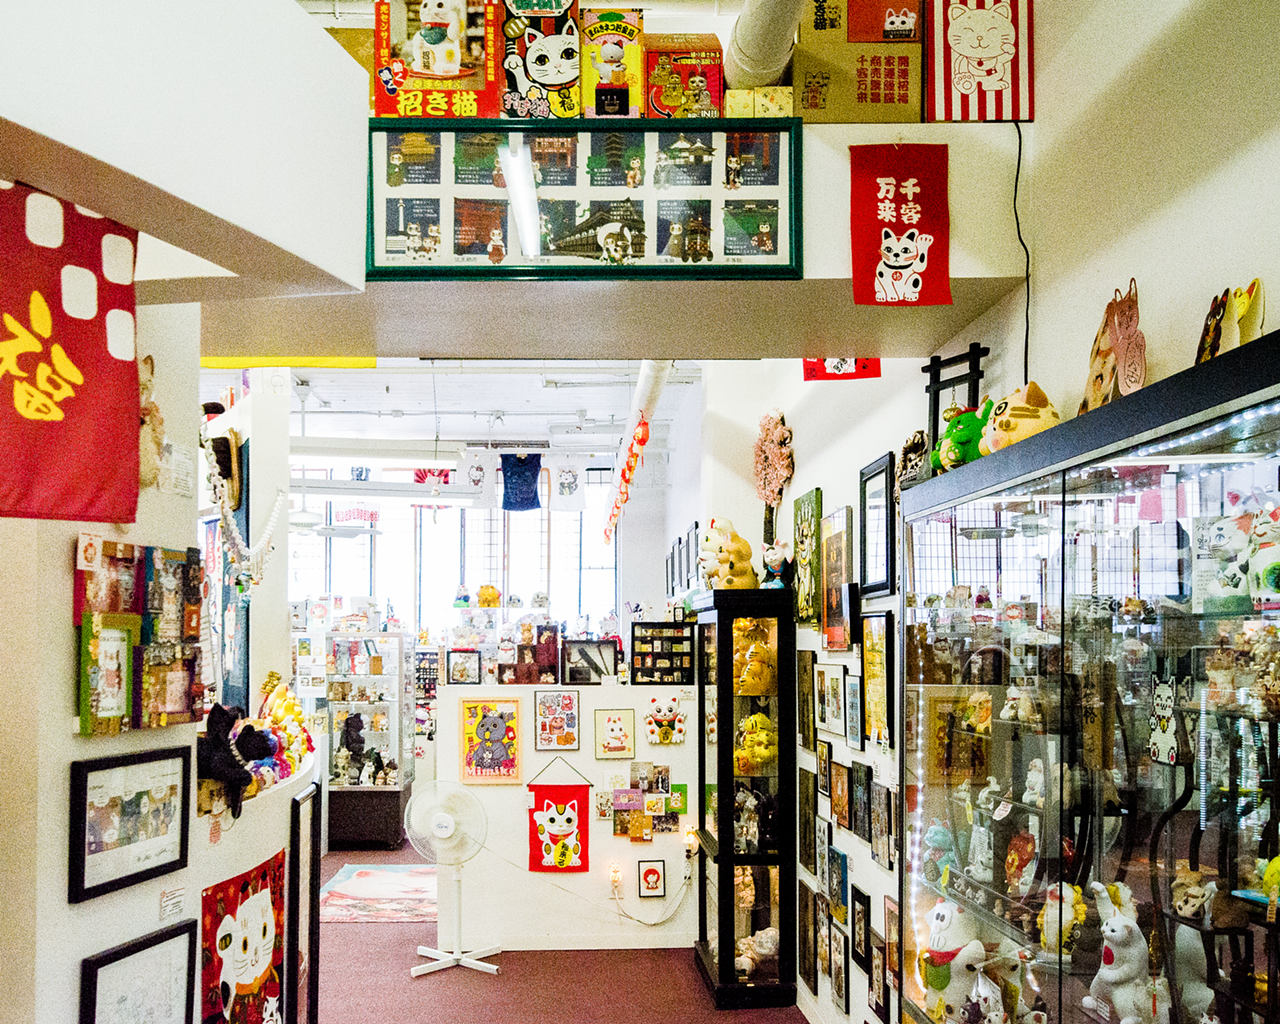 Inside Walnut Hills Maneki Neko ‘Lucky Cat’ Museum